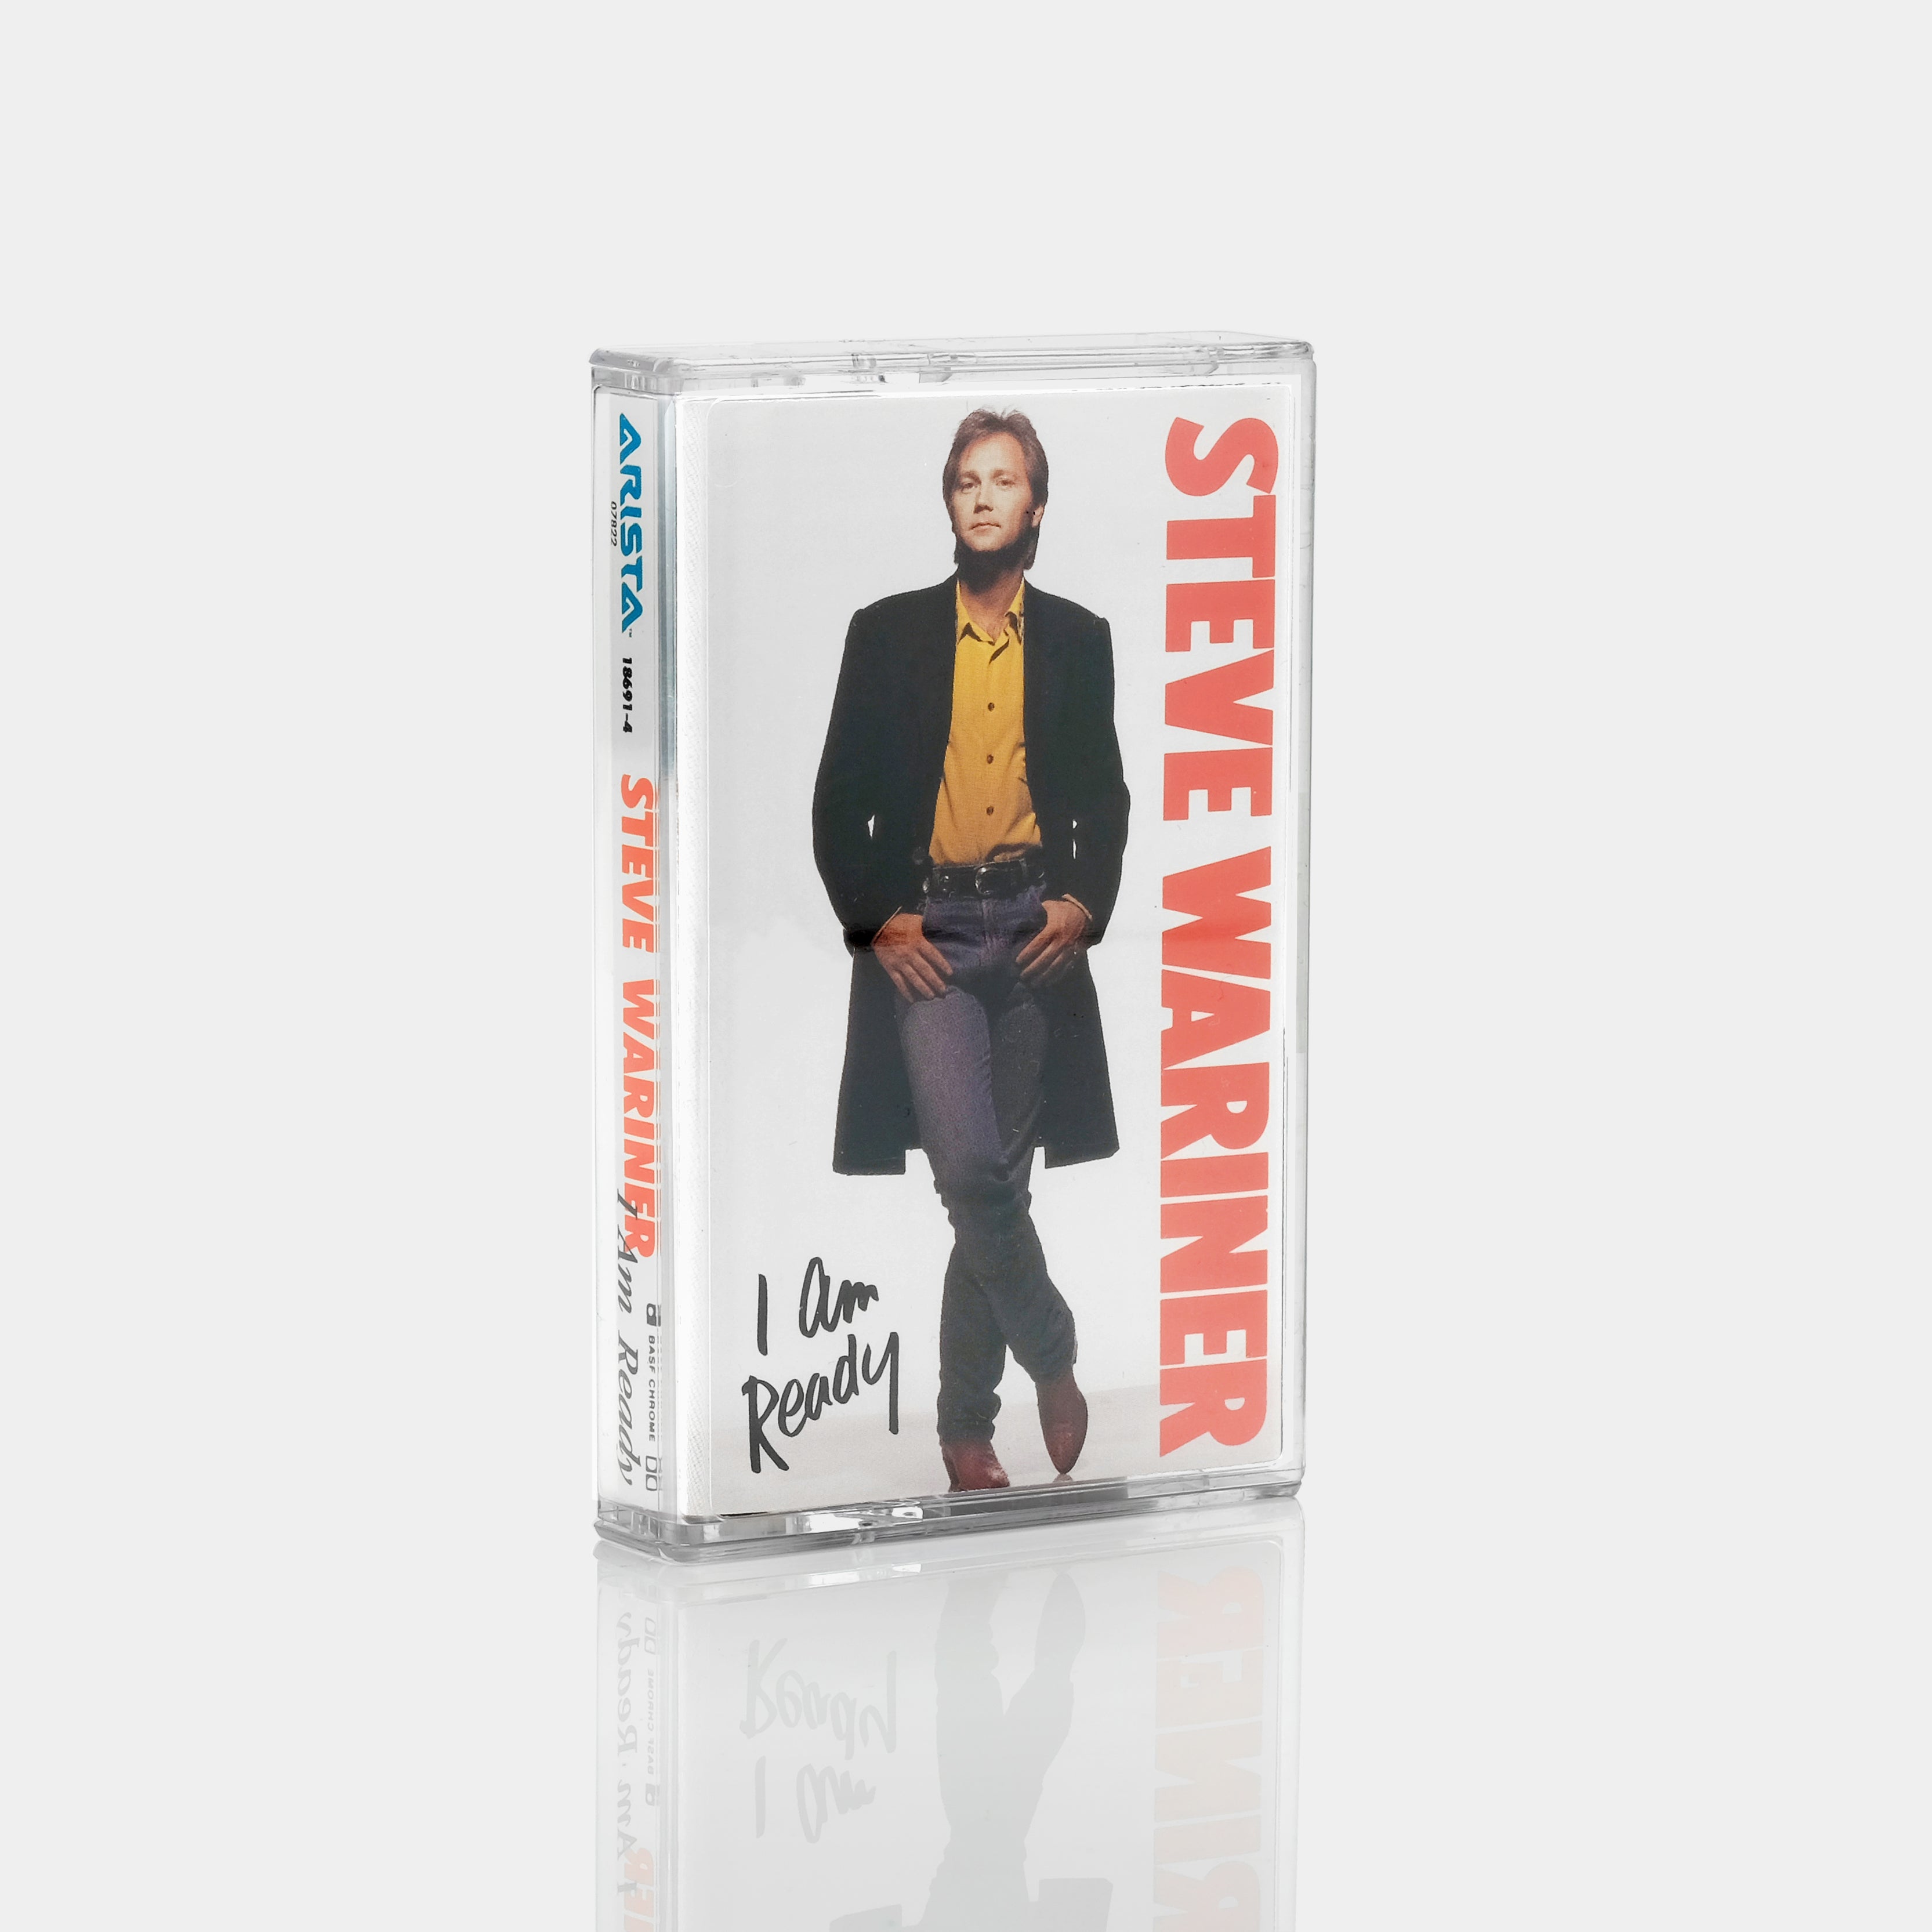 Steve Wariner - I Am Ready Cassette Tape